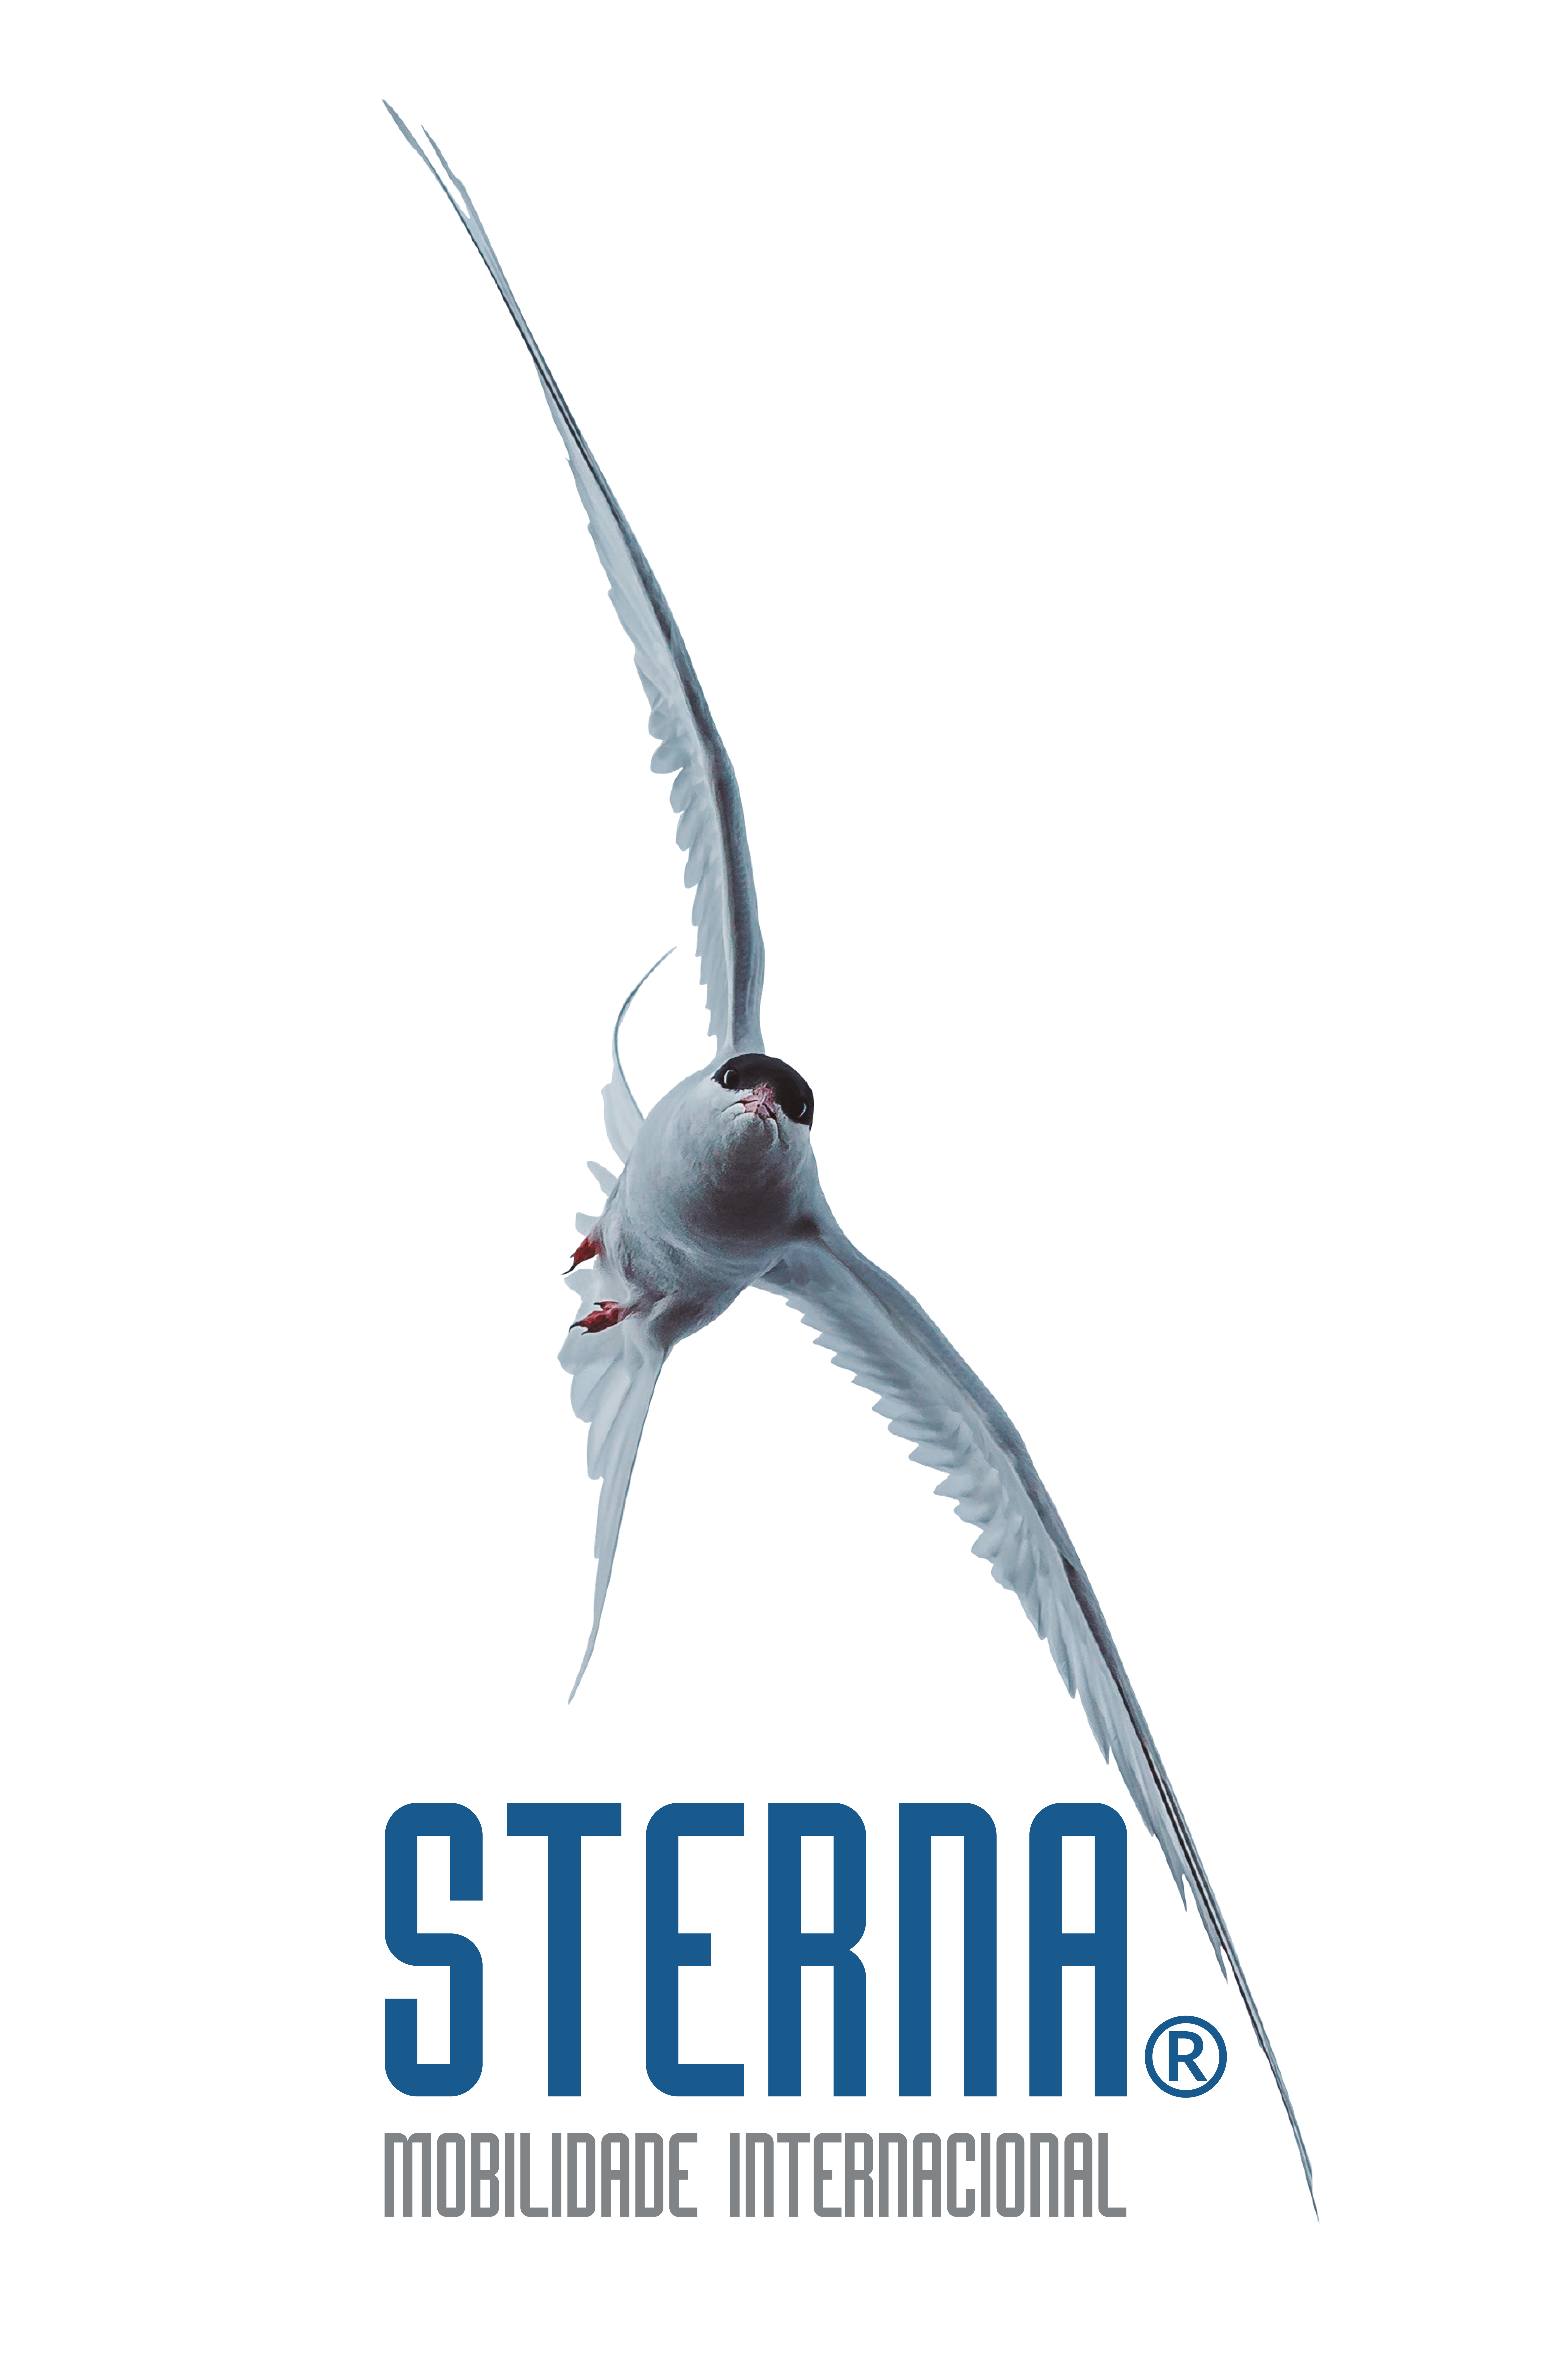 STERNA como um logotipo de pássaro esterna